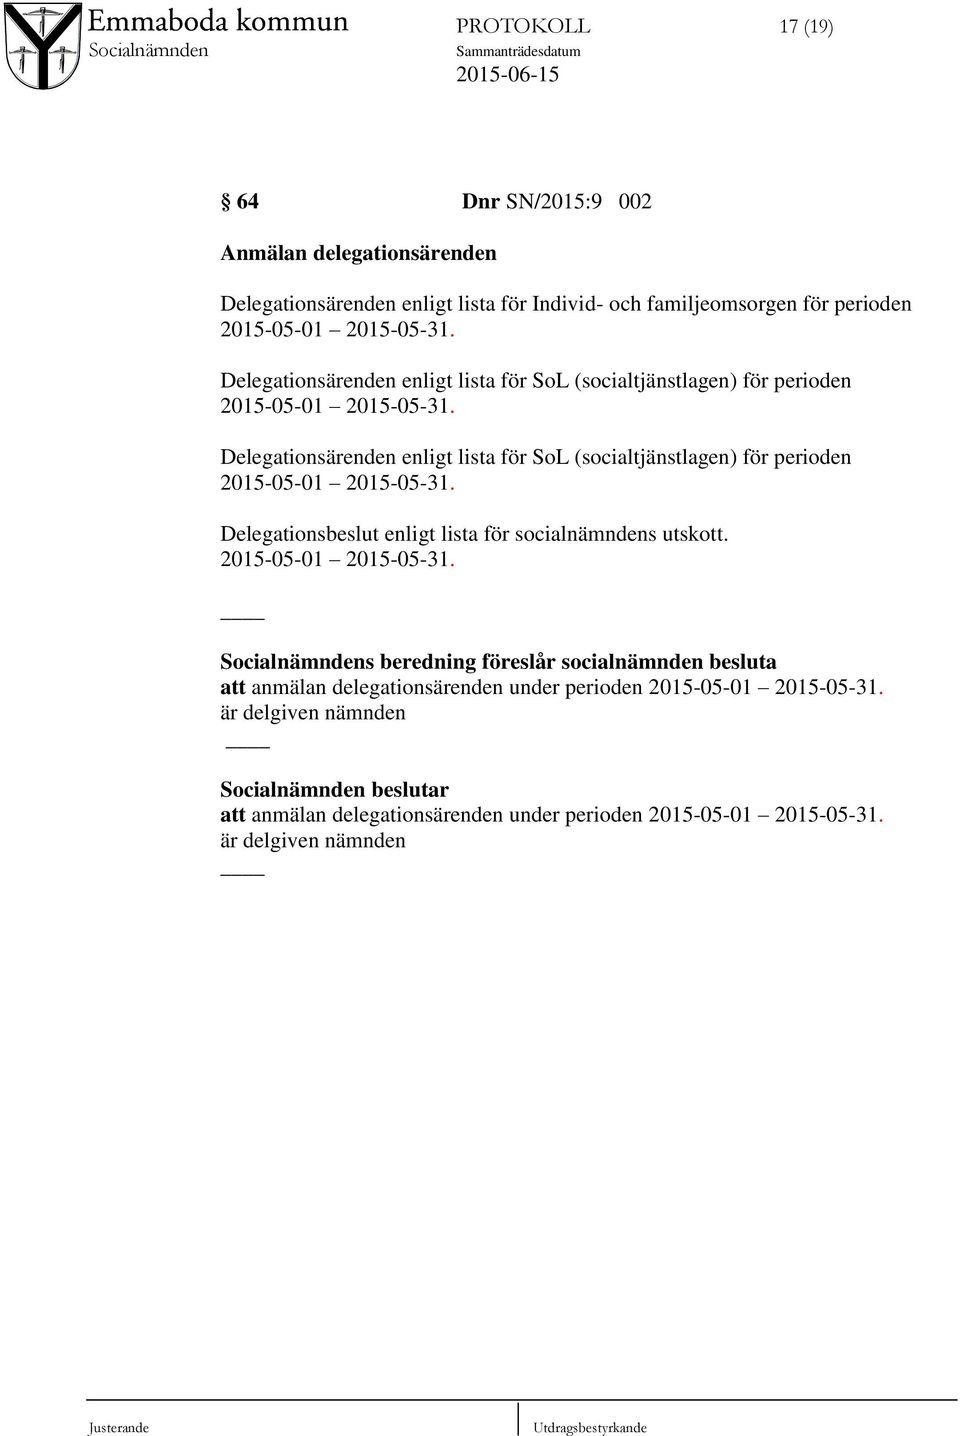 Delegationsbeslut enligt lista för socialnämndens utskott. 2015-05-01 2015-05-31.